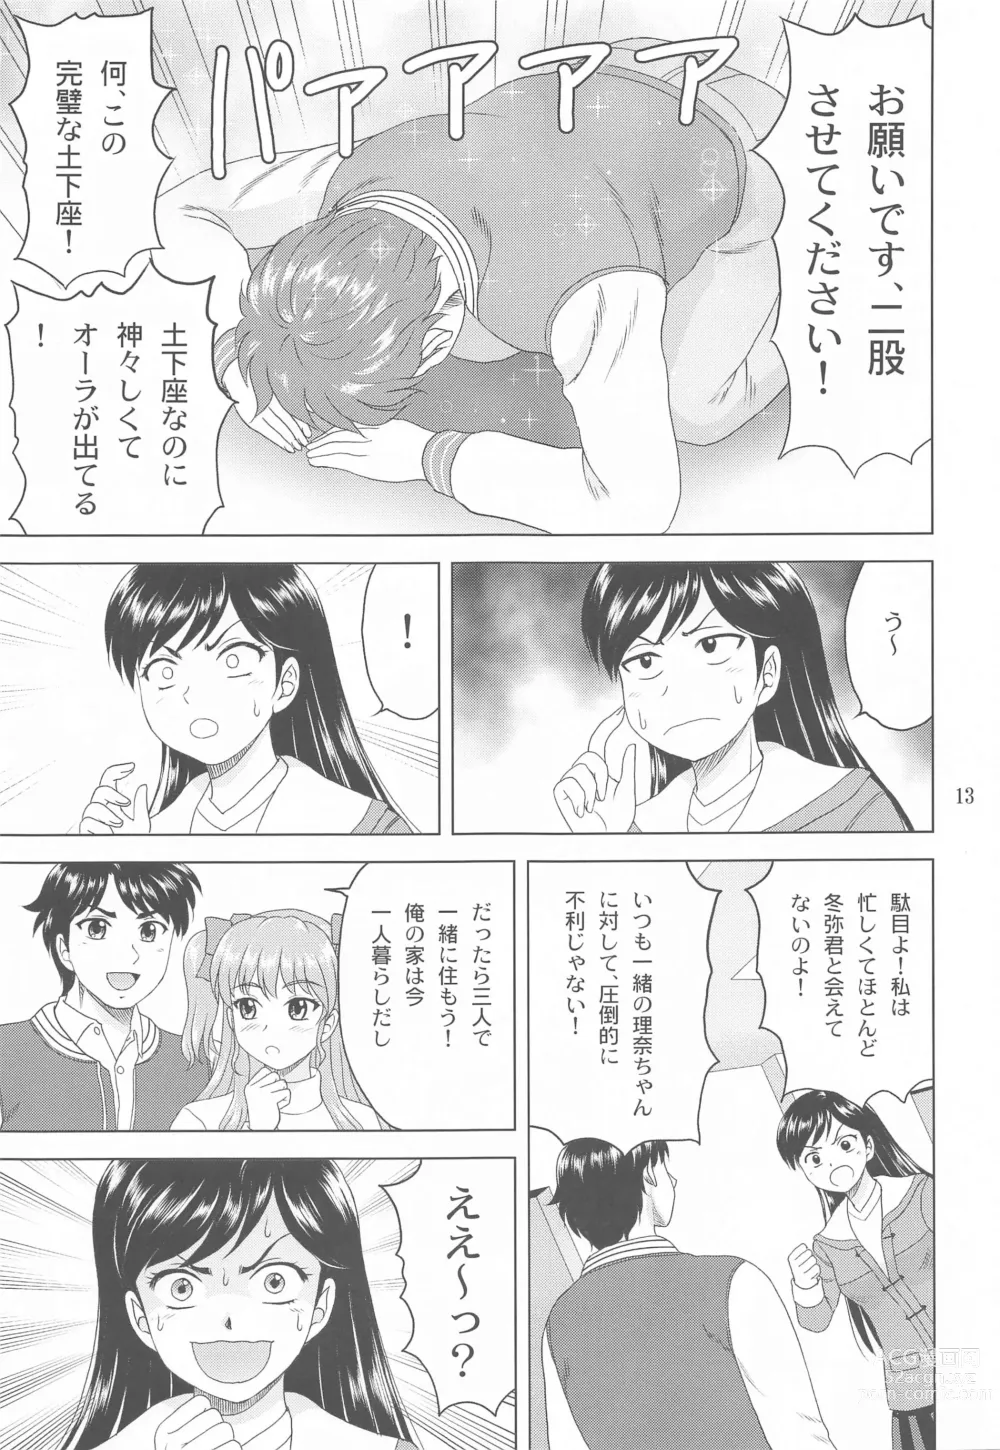 Page 12 of doujinshi Yuki mo Rina mo Kanojo